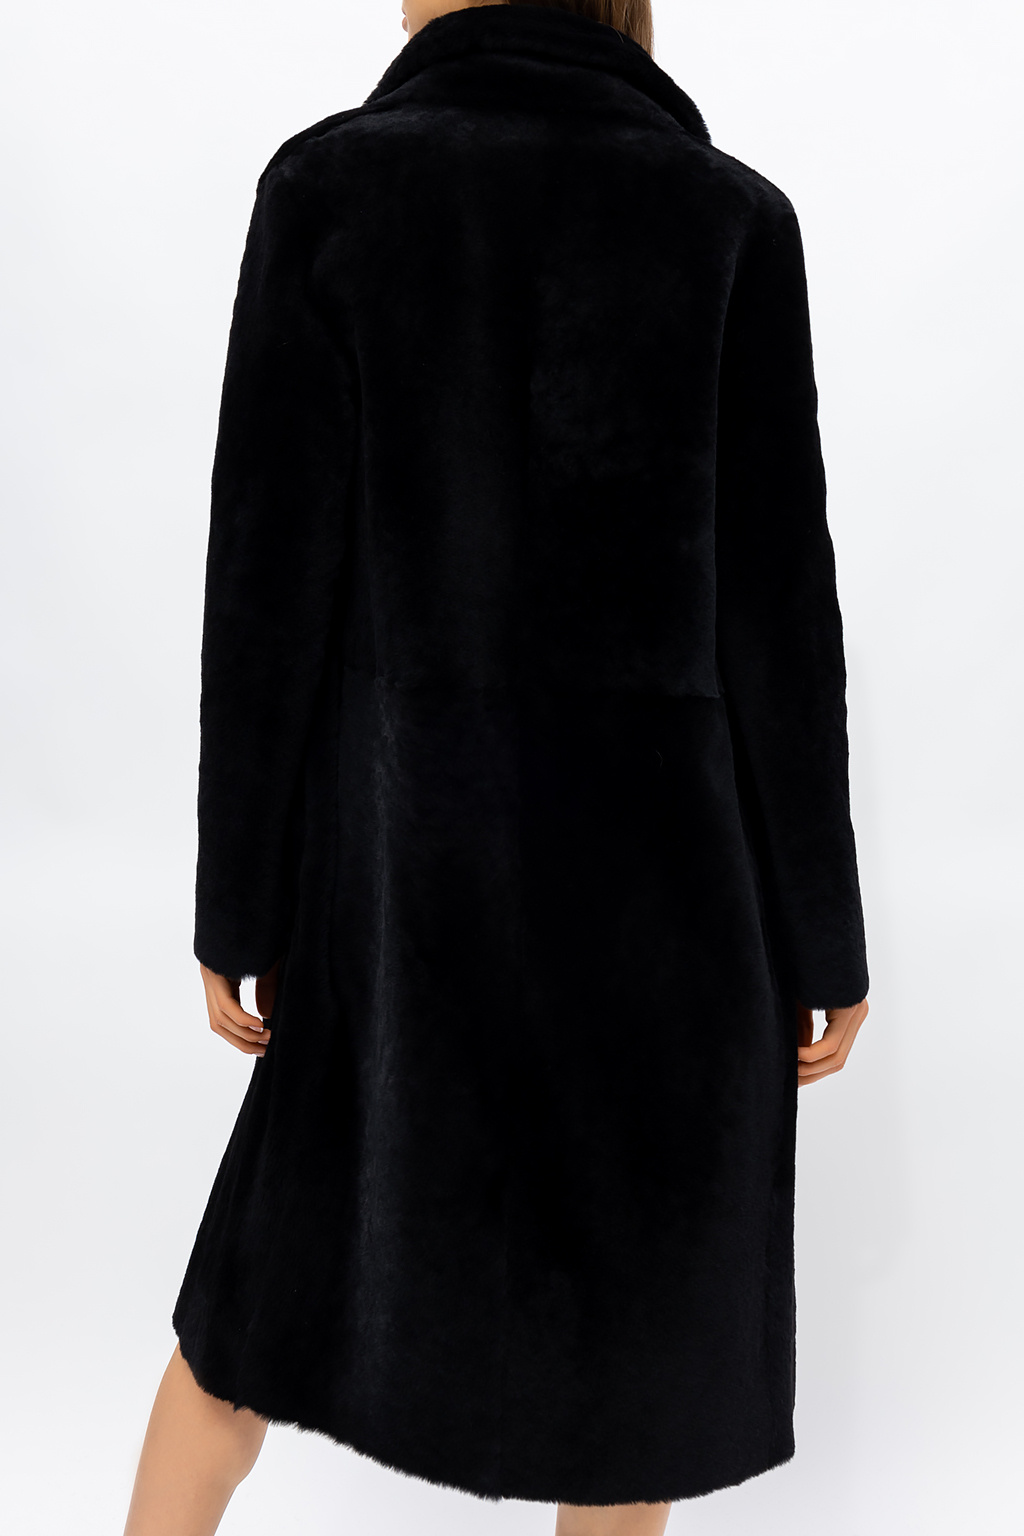 Inès & Maréchal ‘Loire’ shearling coat